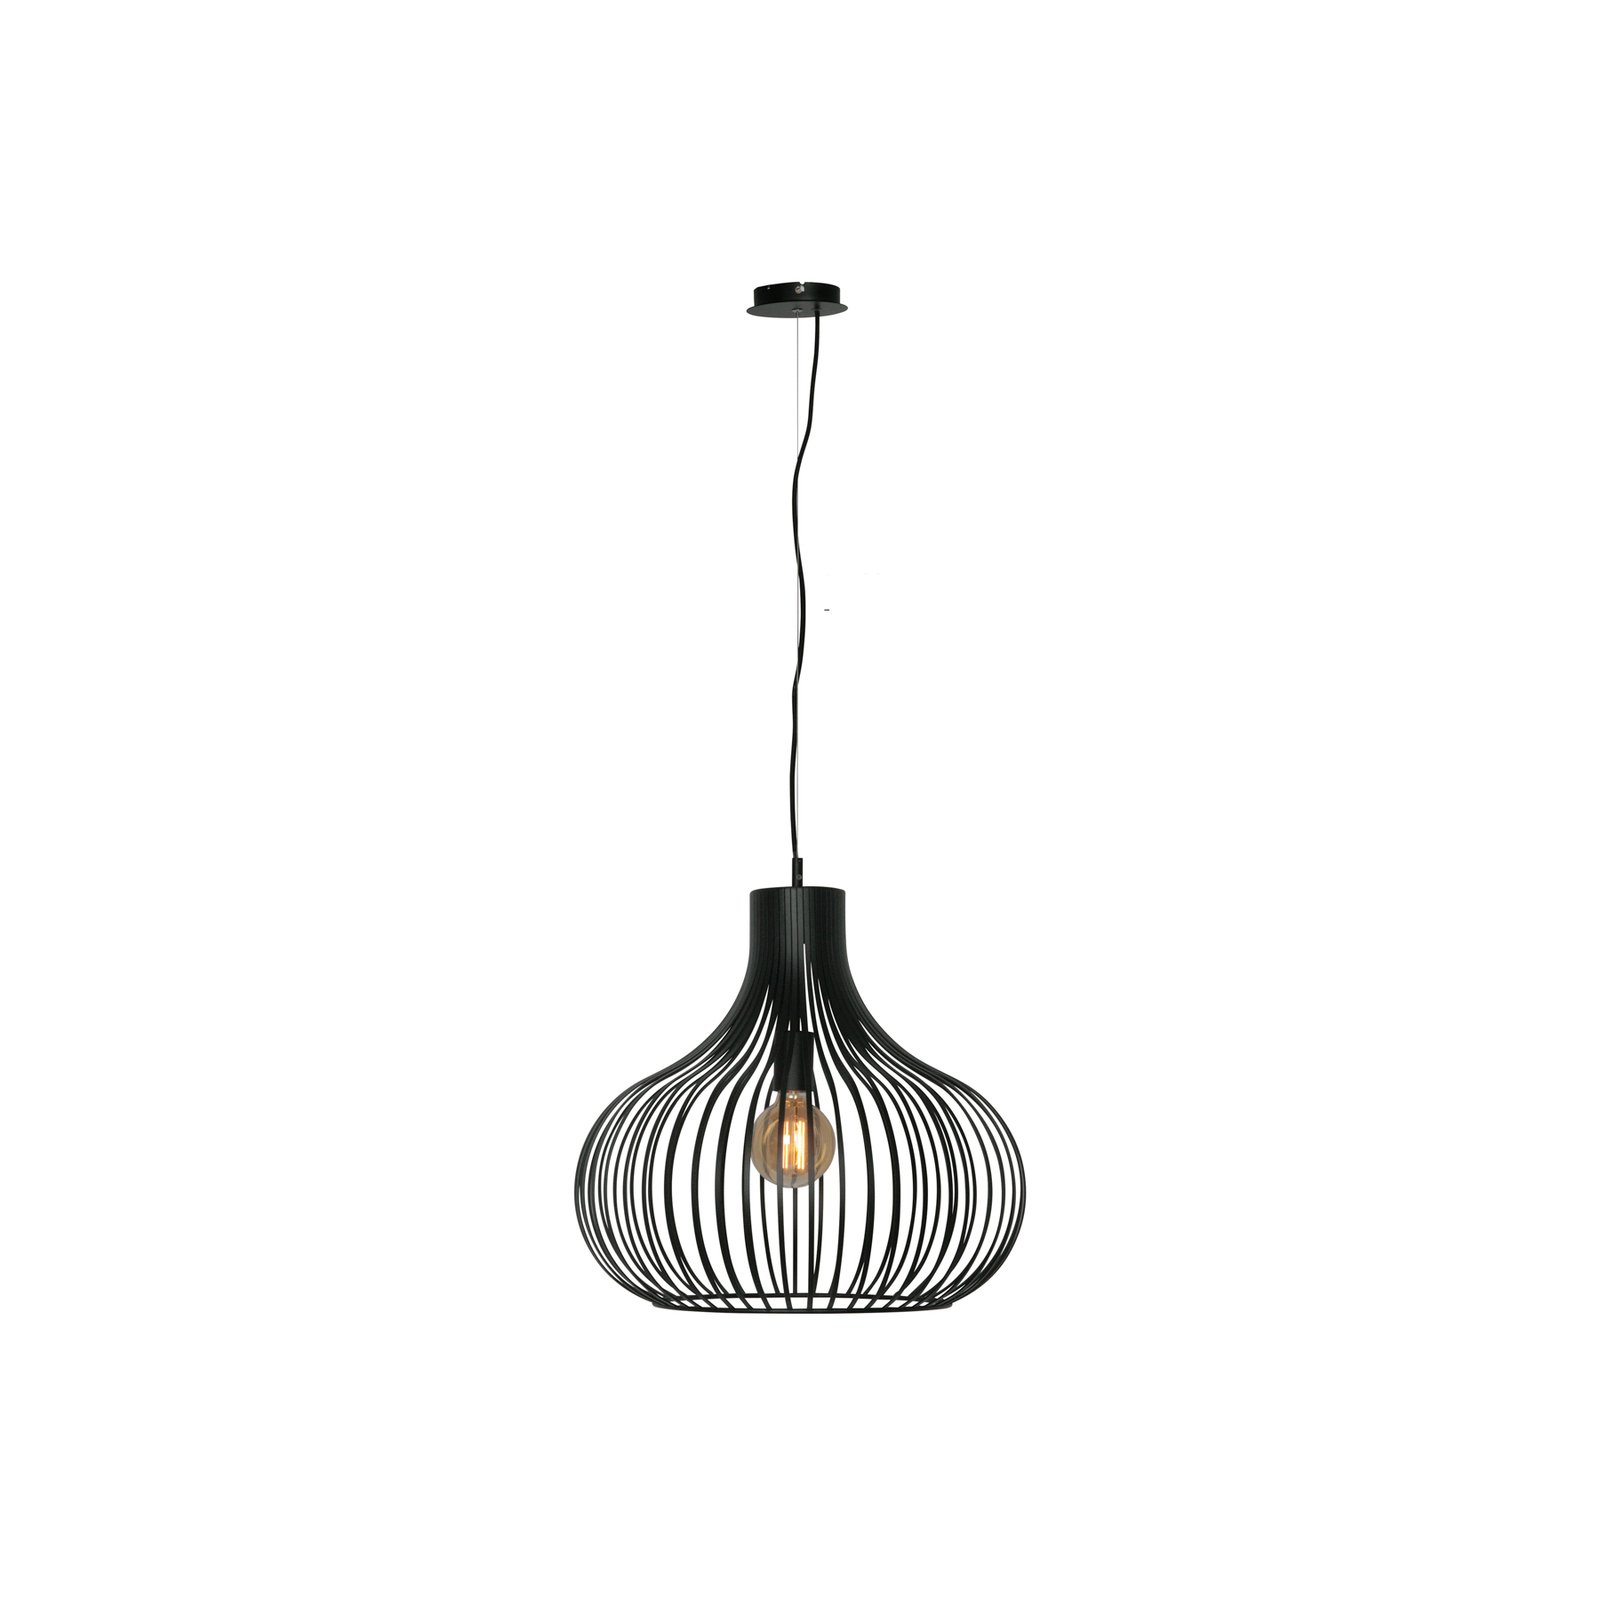 Aglio hanglamp, Ø 48 cm, zwart, metaal